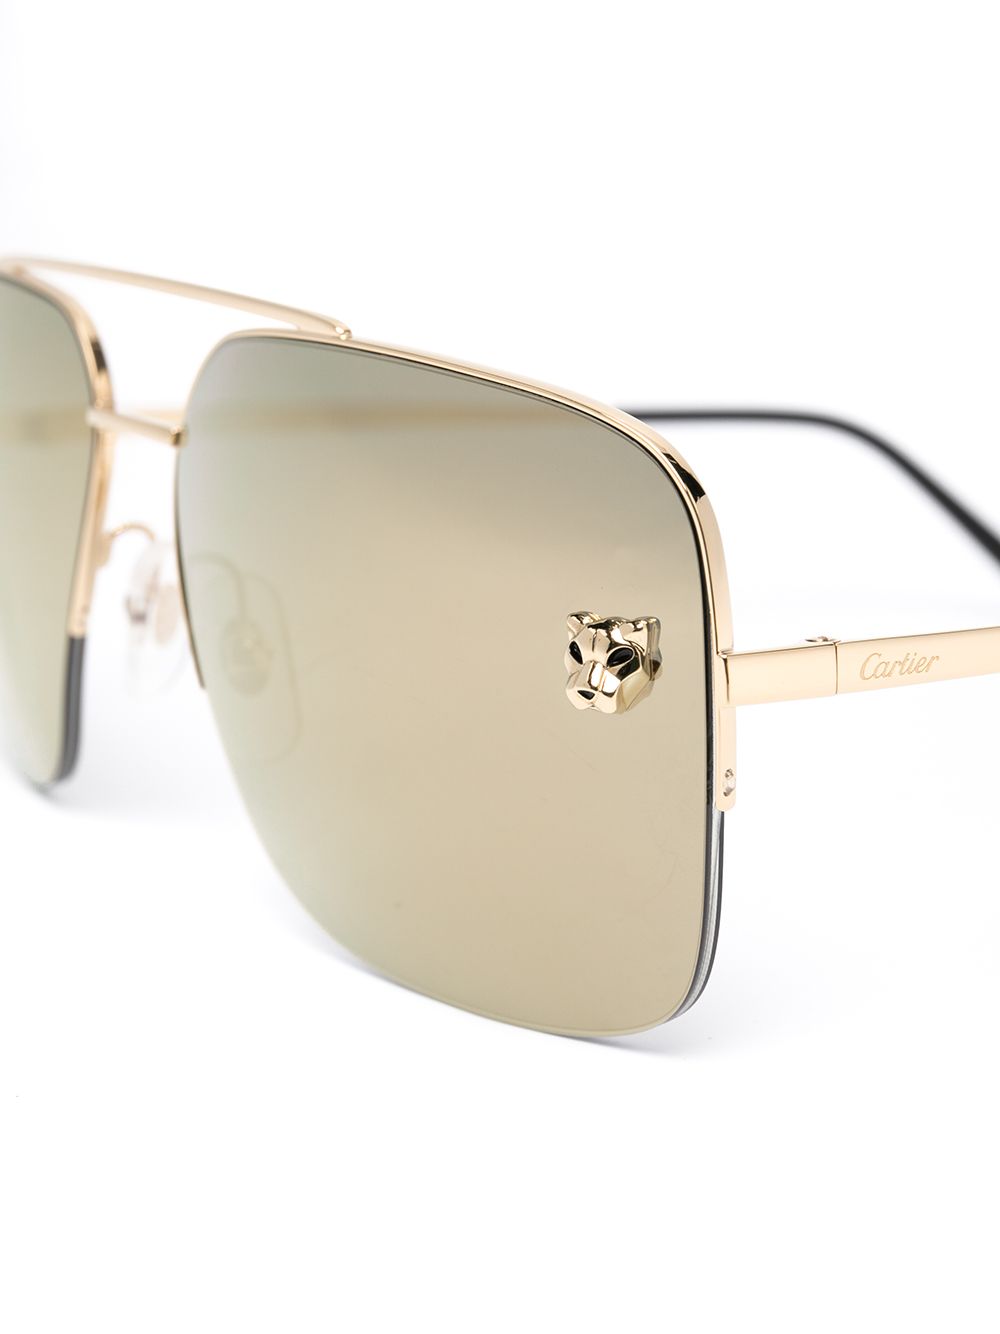 фото Cartier eyewear солнцезащитные очки в квадратной оправе